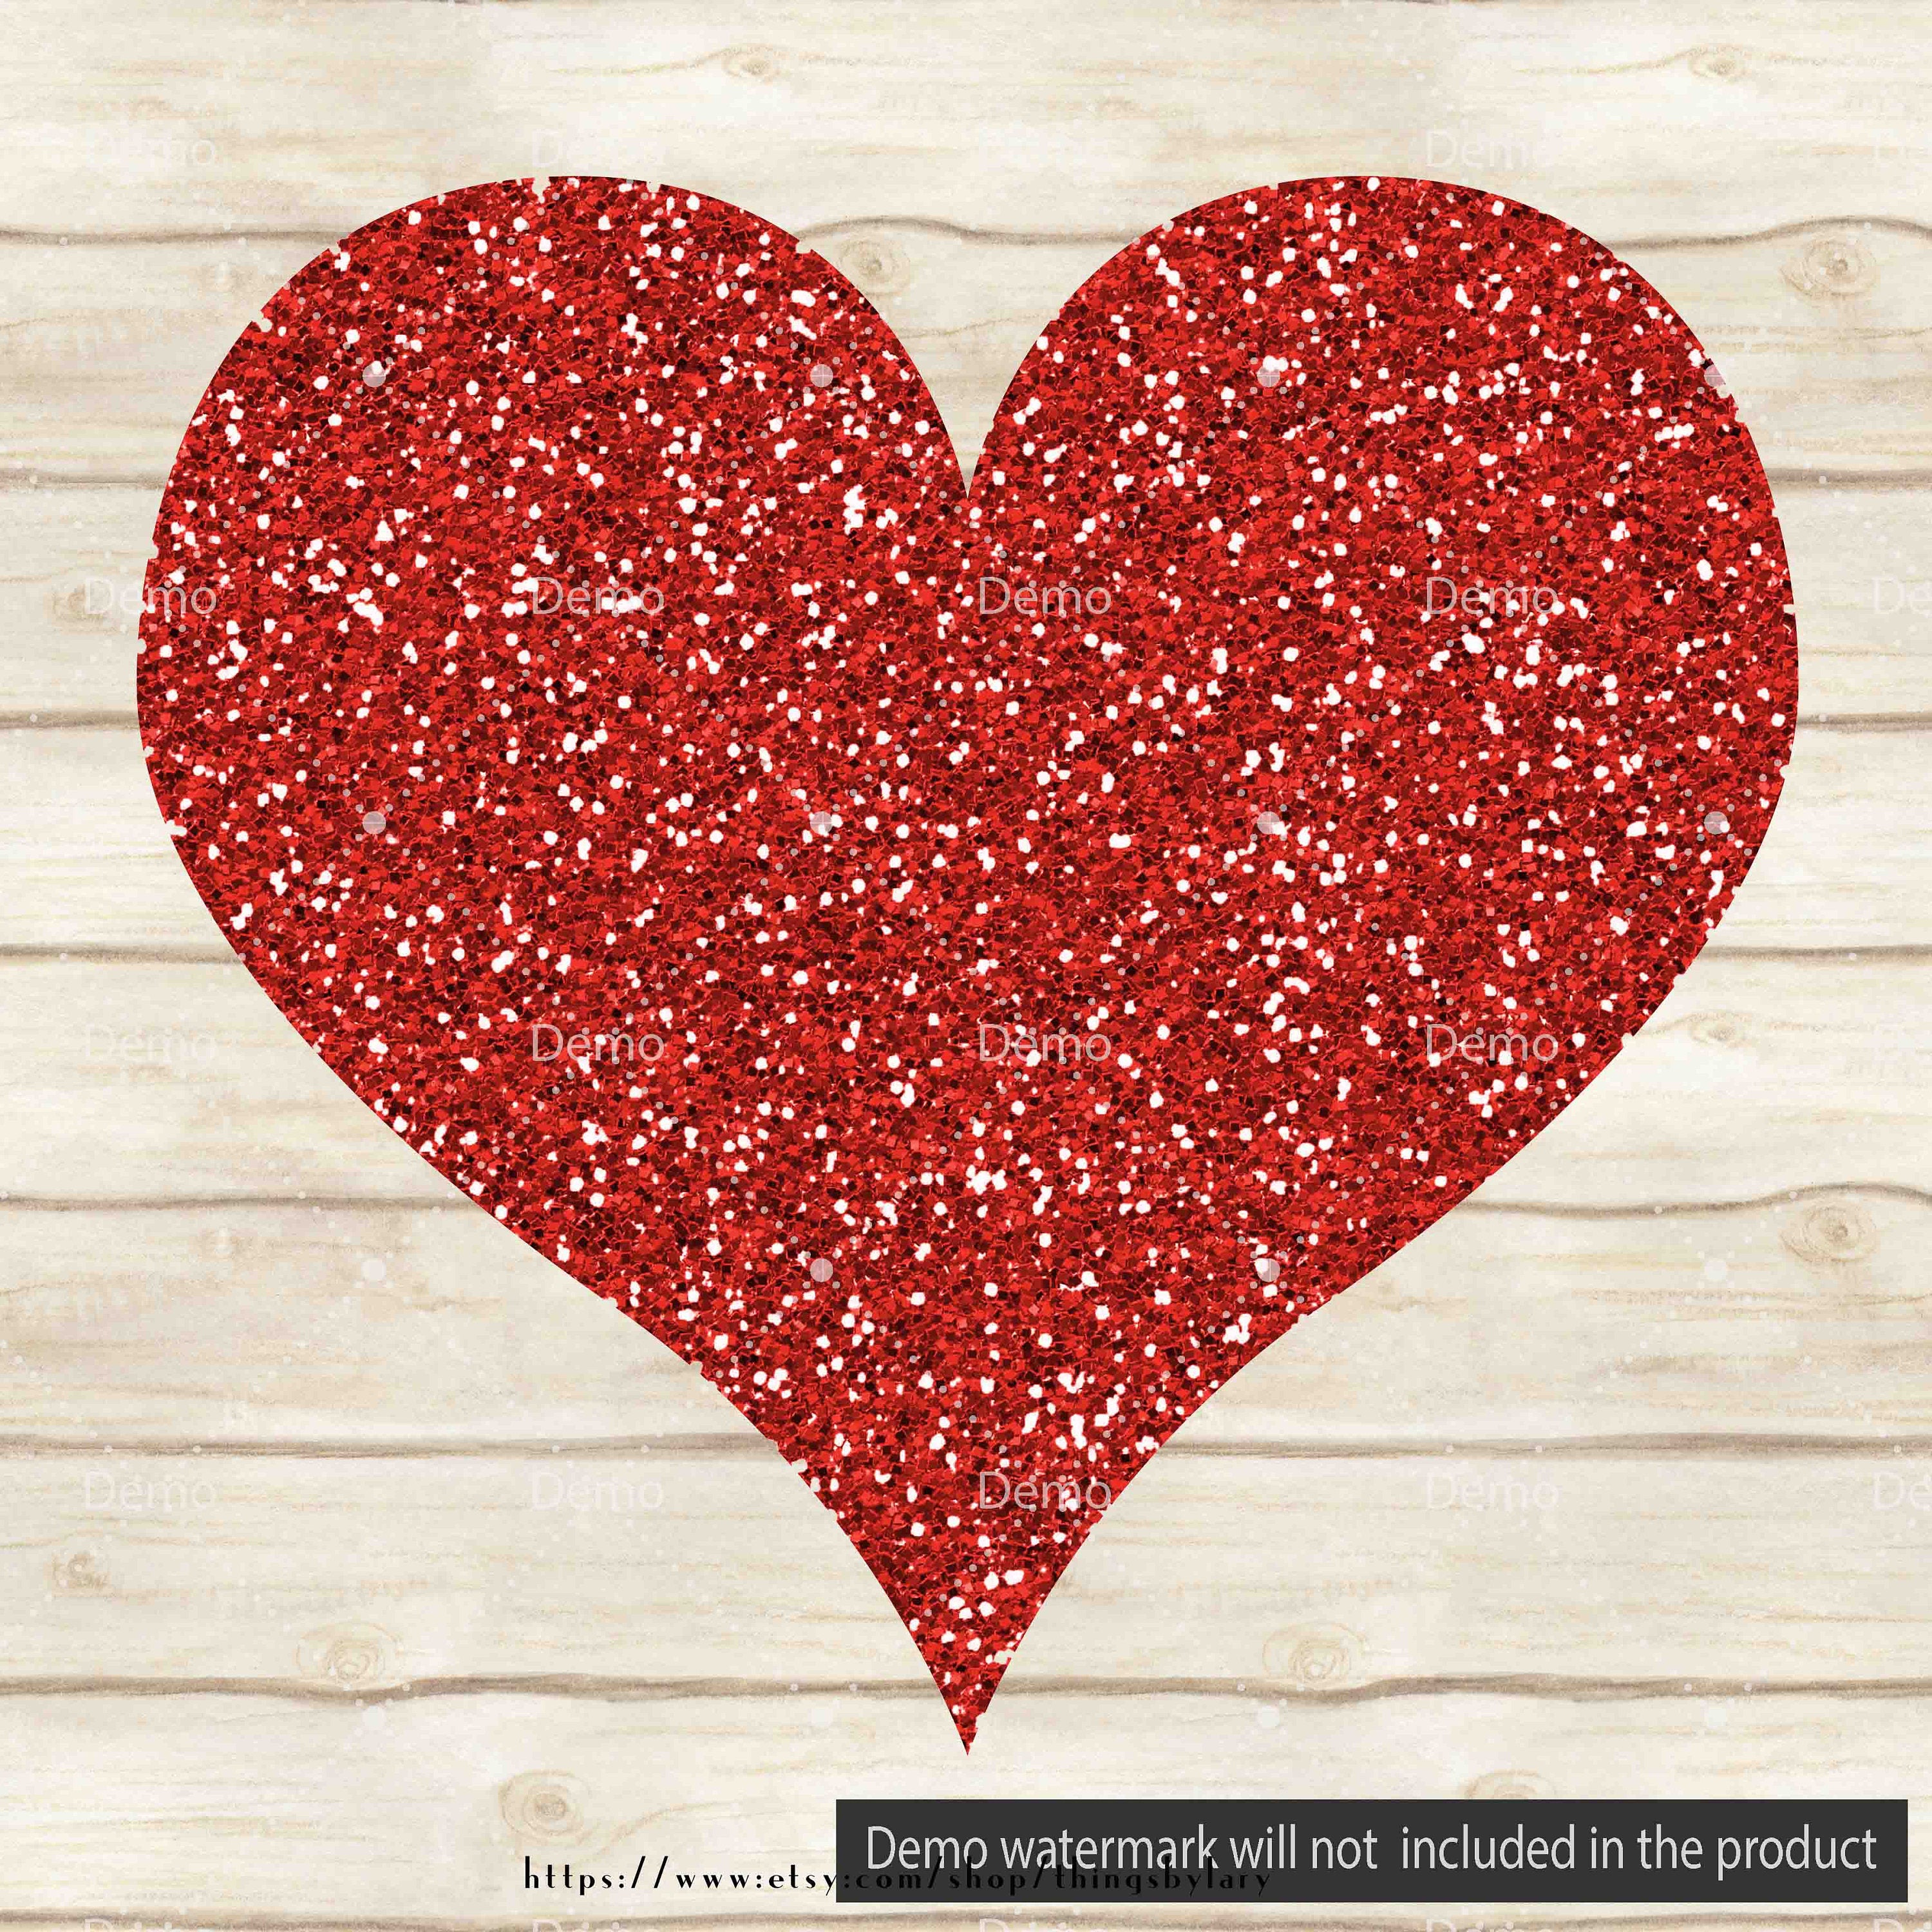 100 Glitter Heart Clipart, Heart Clipart, Glitter Clipart, Love Clipart, 100 PNG Clipart, Planner Clipart, Valentine Clip Arts